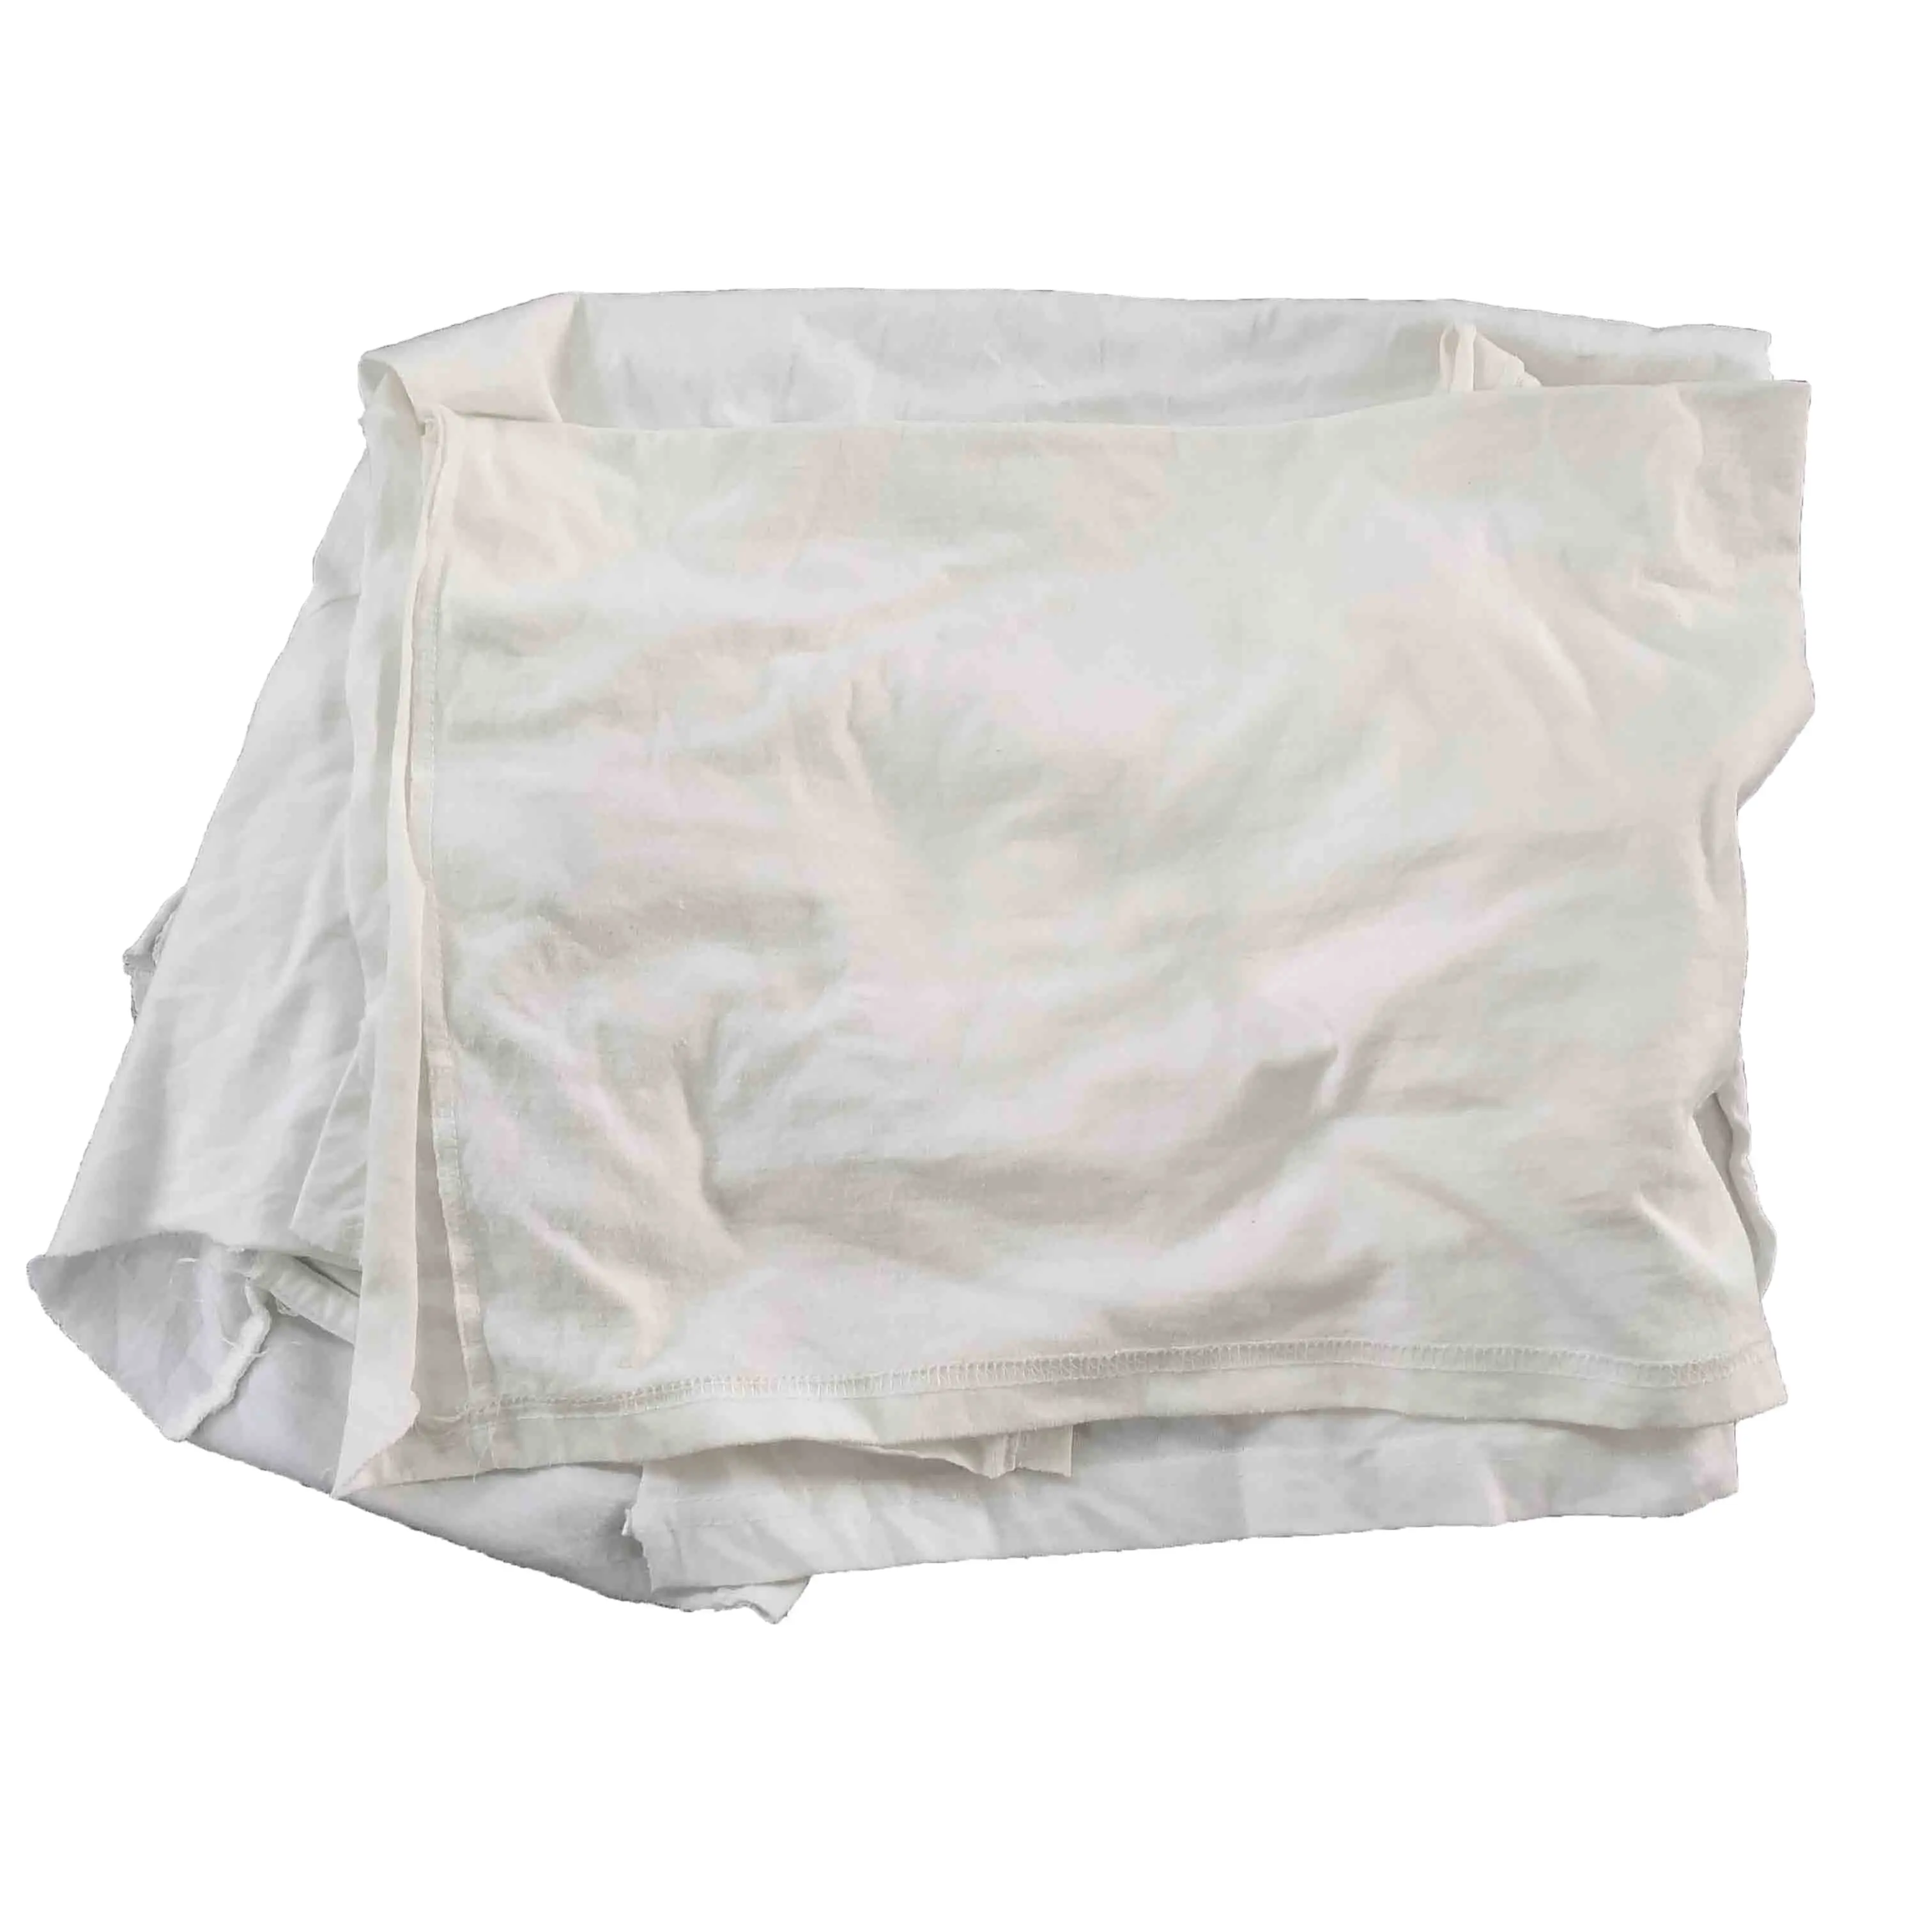 Многофункциональные тюки 25 кг, хлопковая тряпка, белая трикотажная ткань для одежды, тряпки для протирания